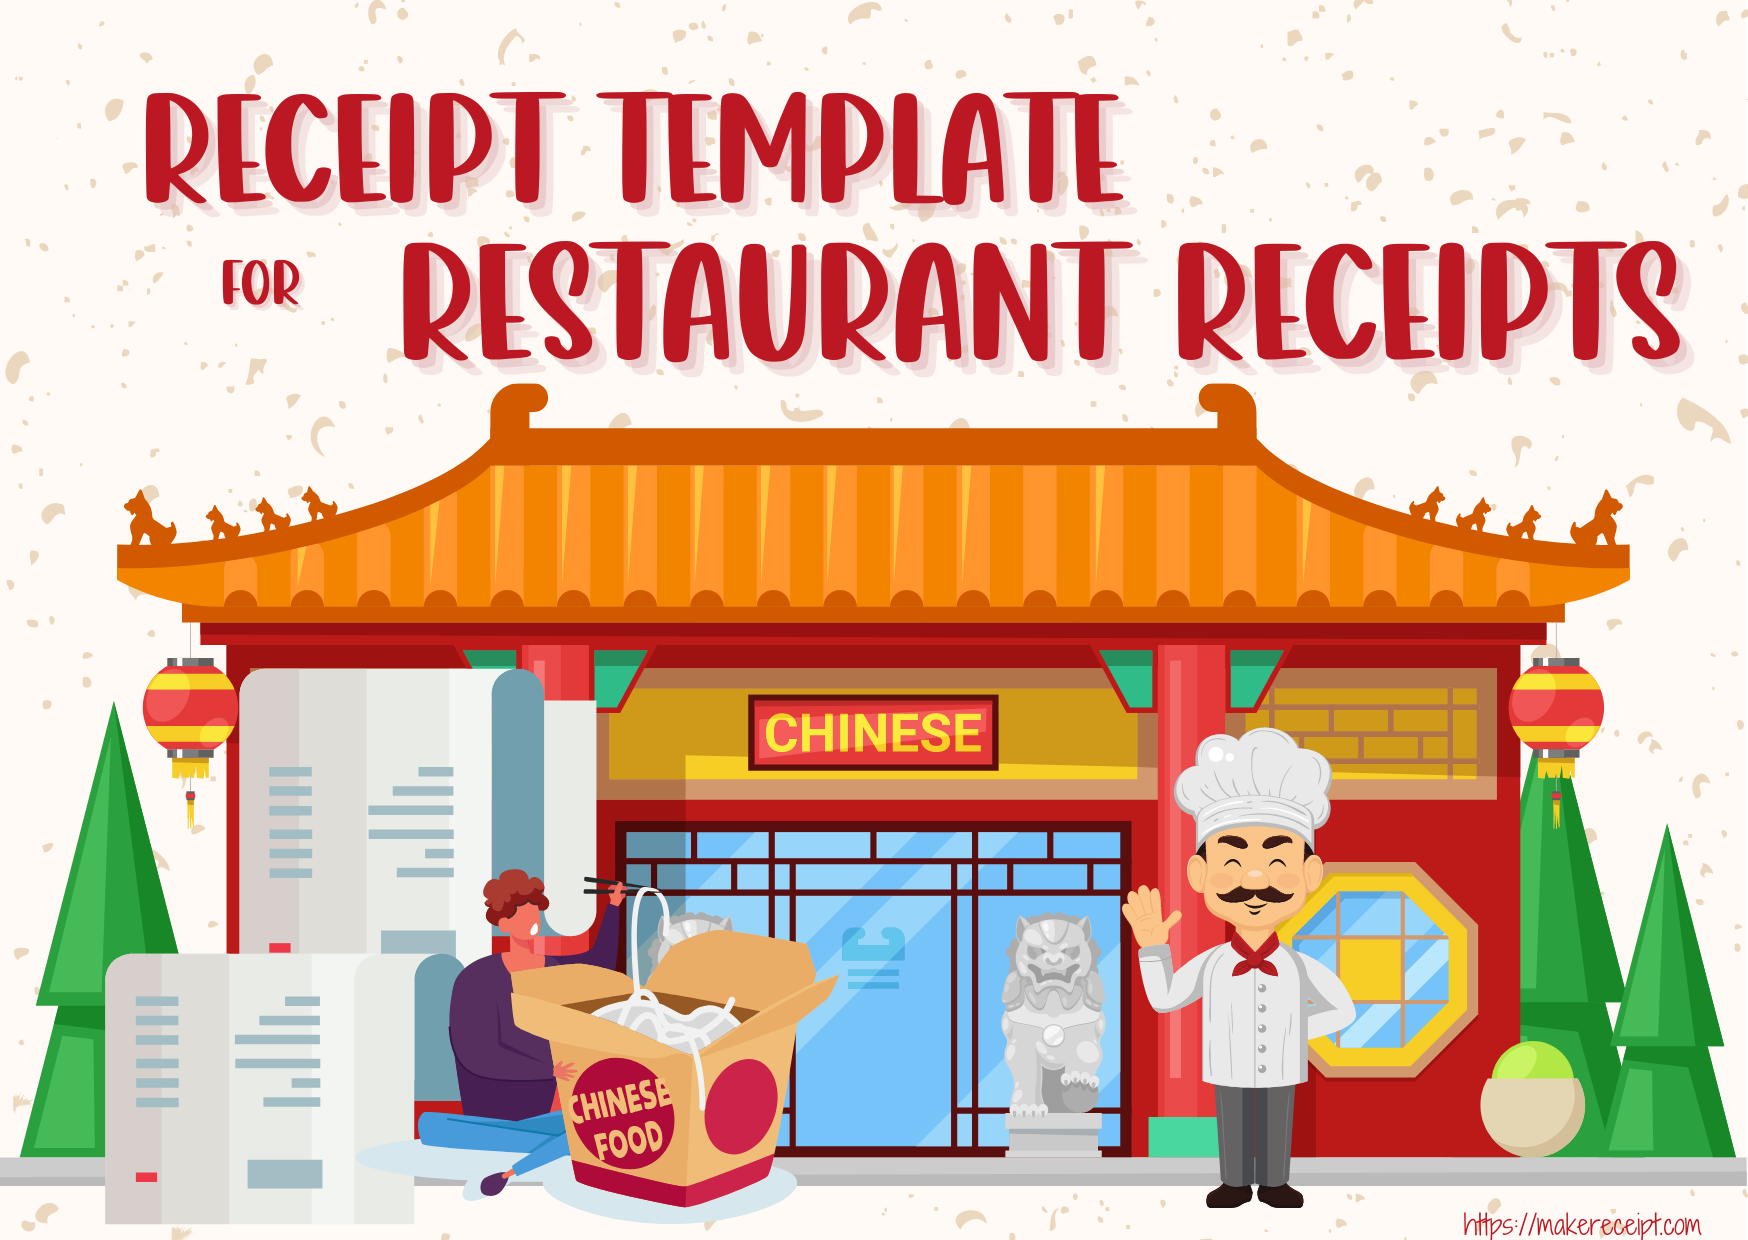 Receipt Template for Restaurant Receipts